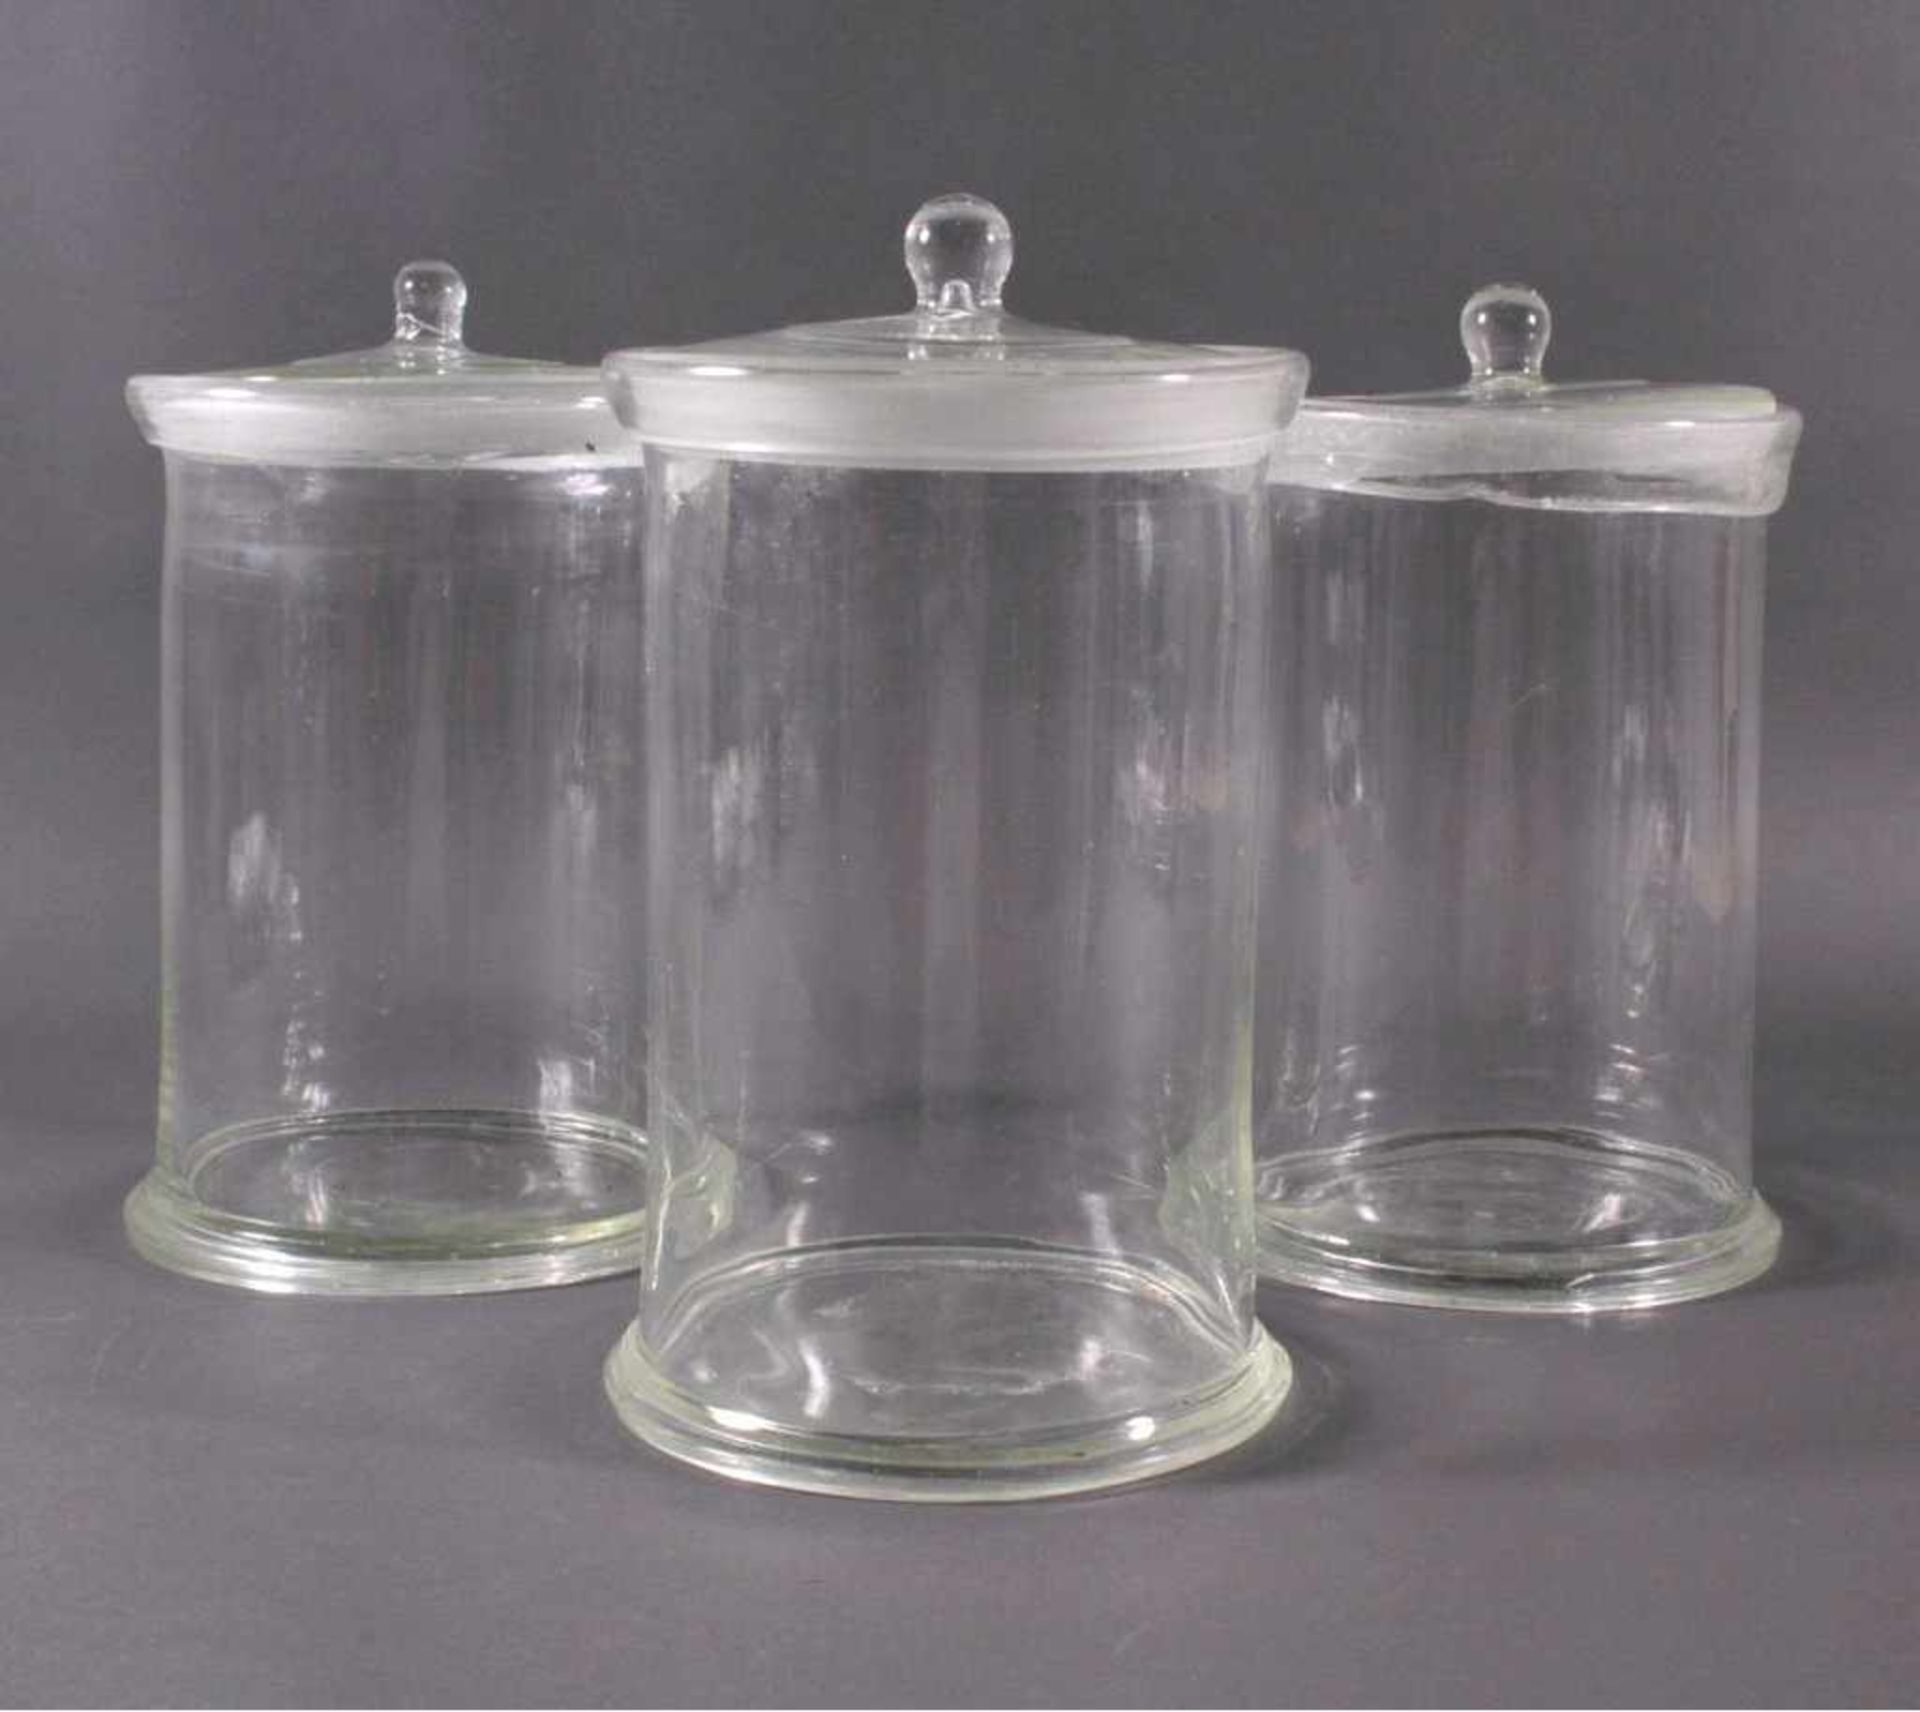 3 große Deckelgefäße aus dem 19. Jh.Klarglas mit Lufteinschlüssen, Voratsgefäße, zylindrischeForm